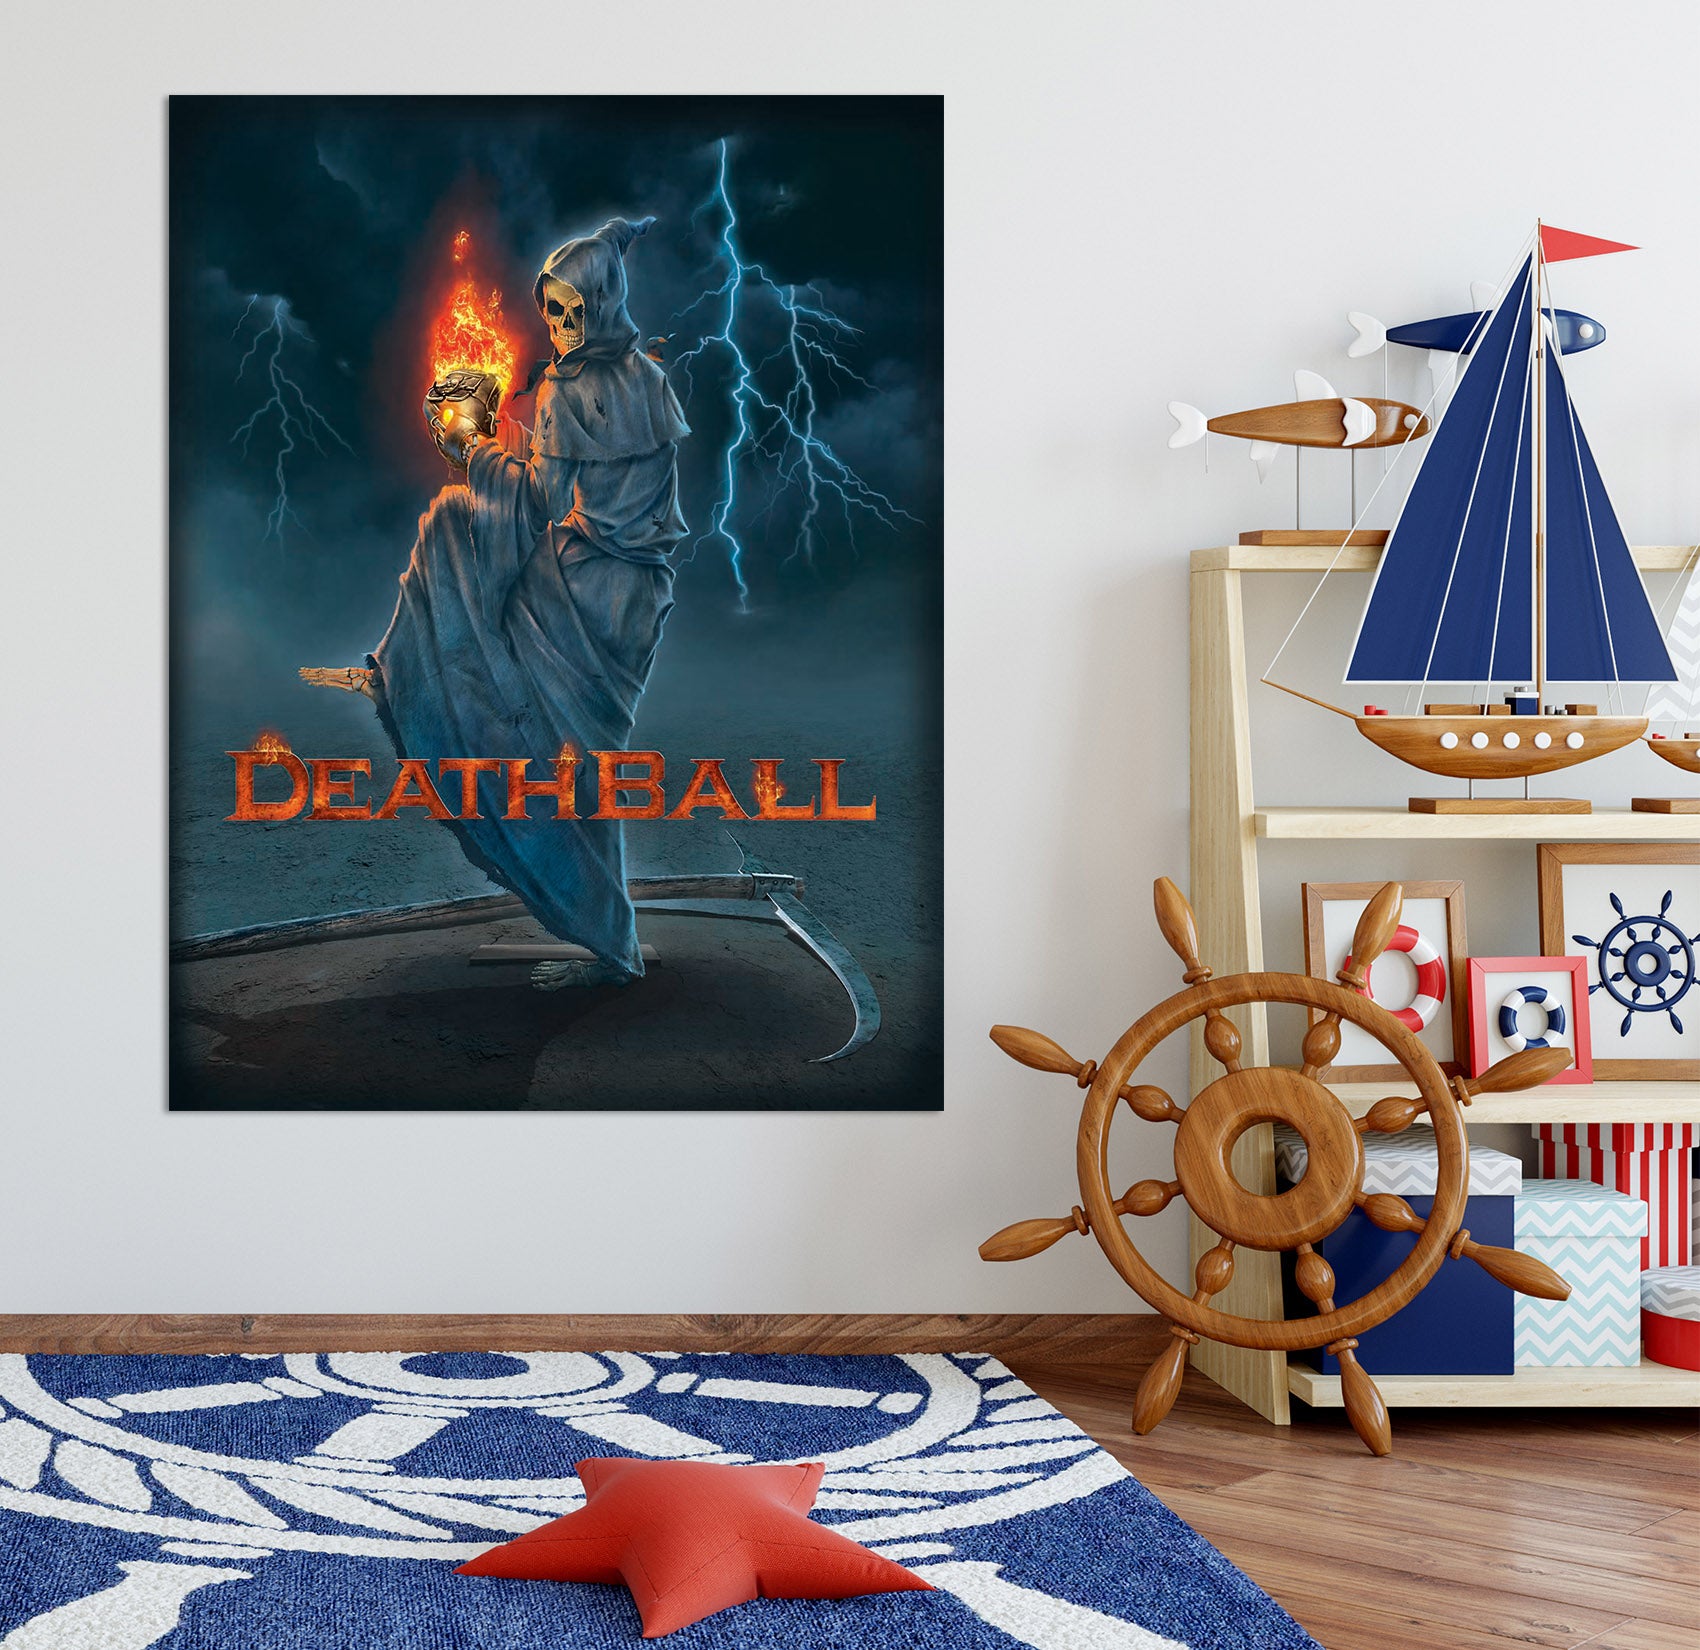 3D Death Ball 028 Vincent Hie Wall Sticker